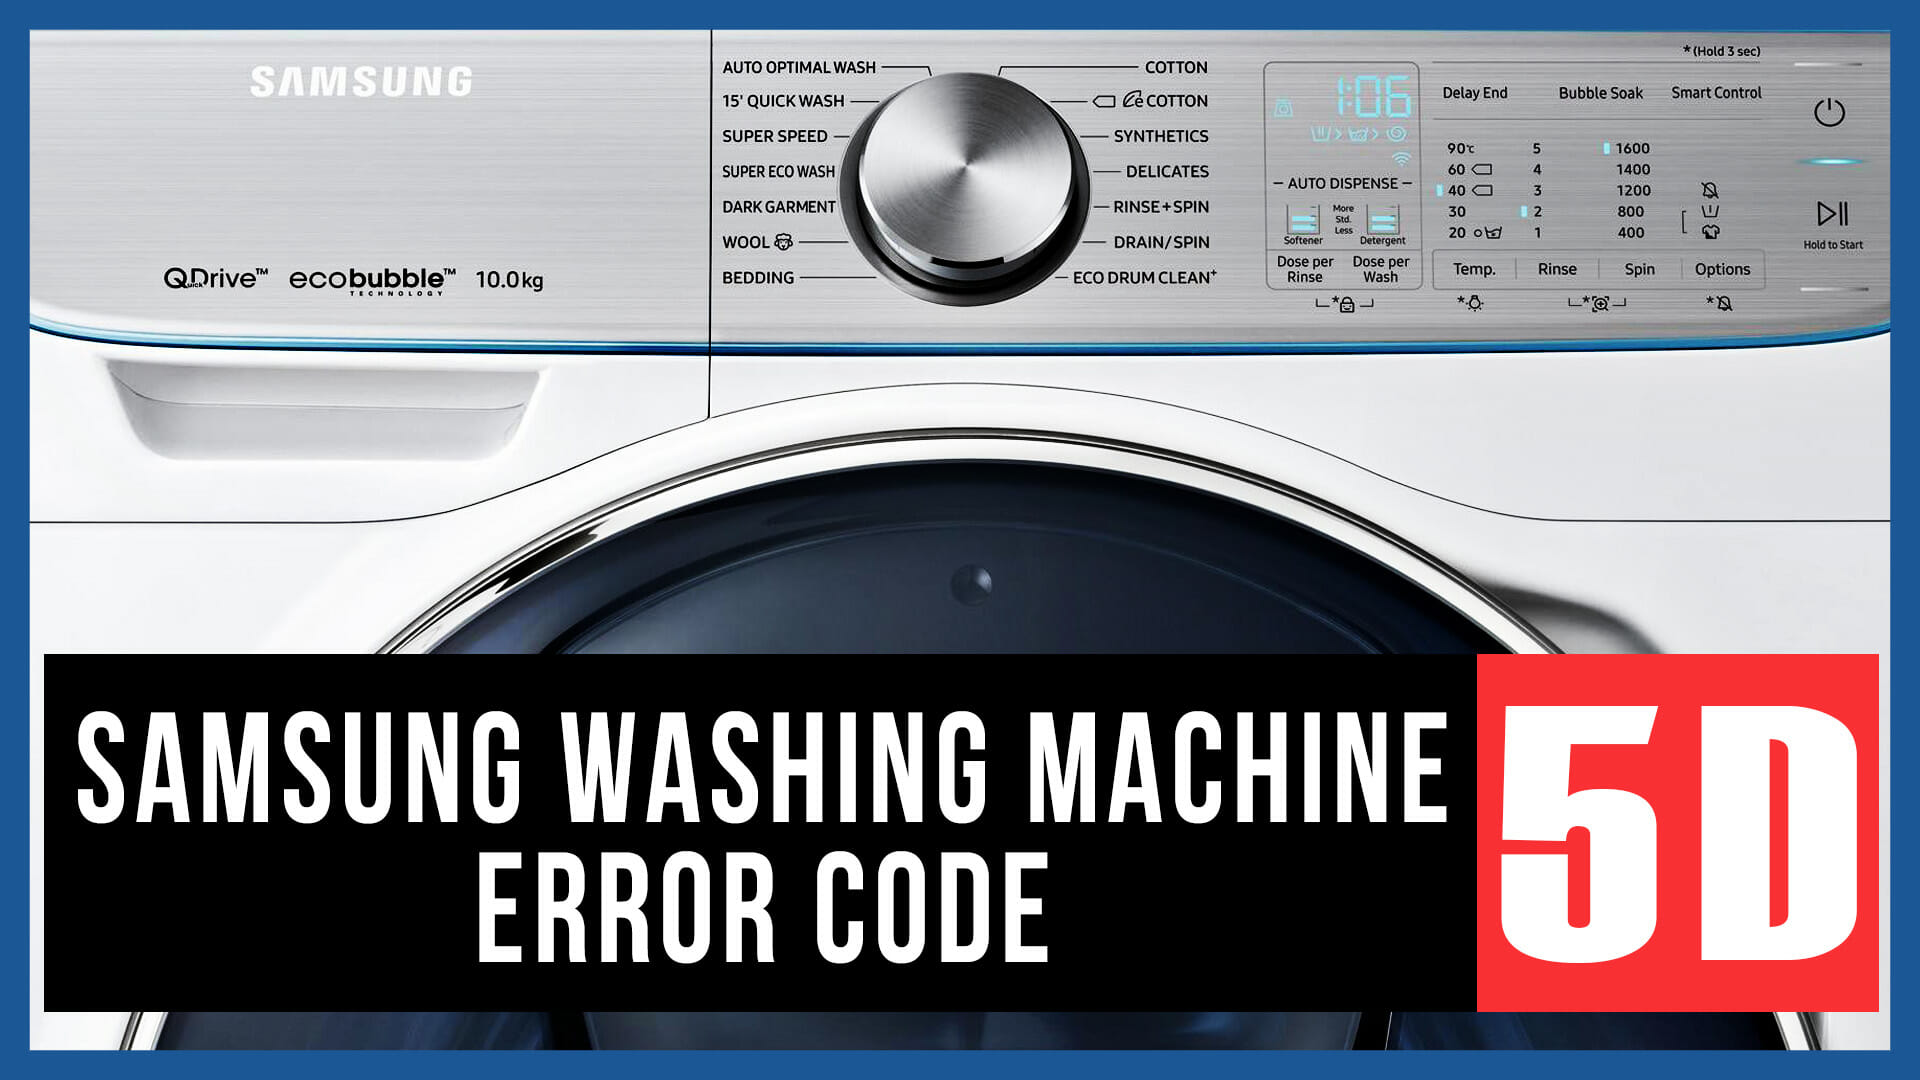 Samsung washing machine error code 5D